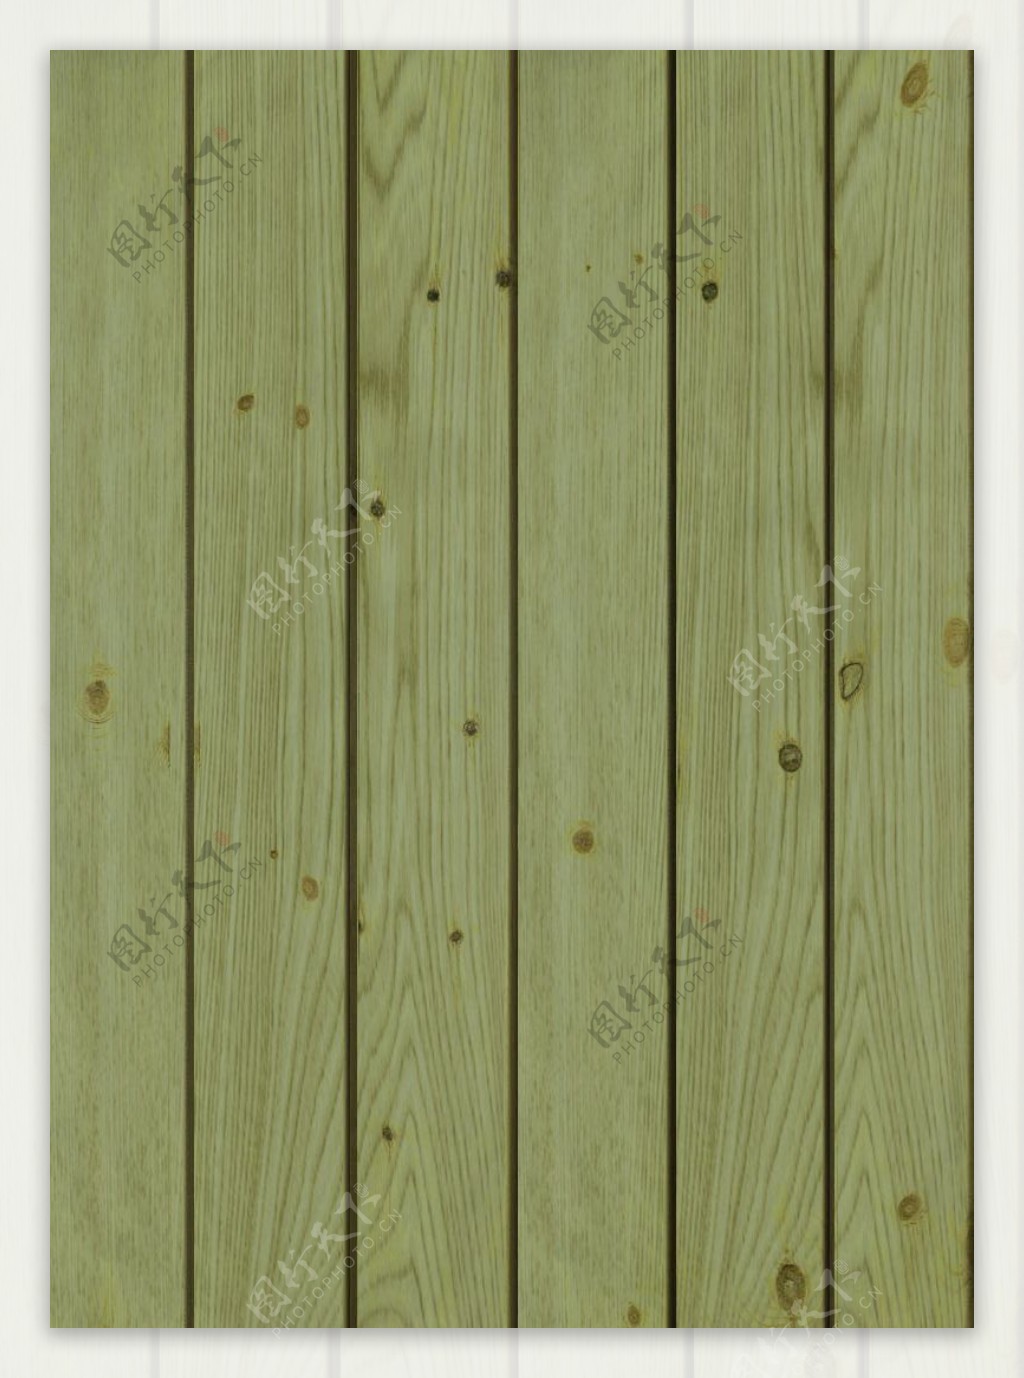 木材木纹木刻花效果图3d素材32